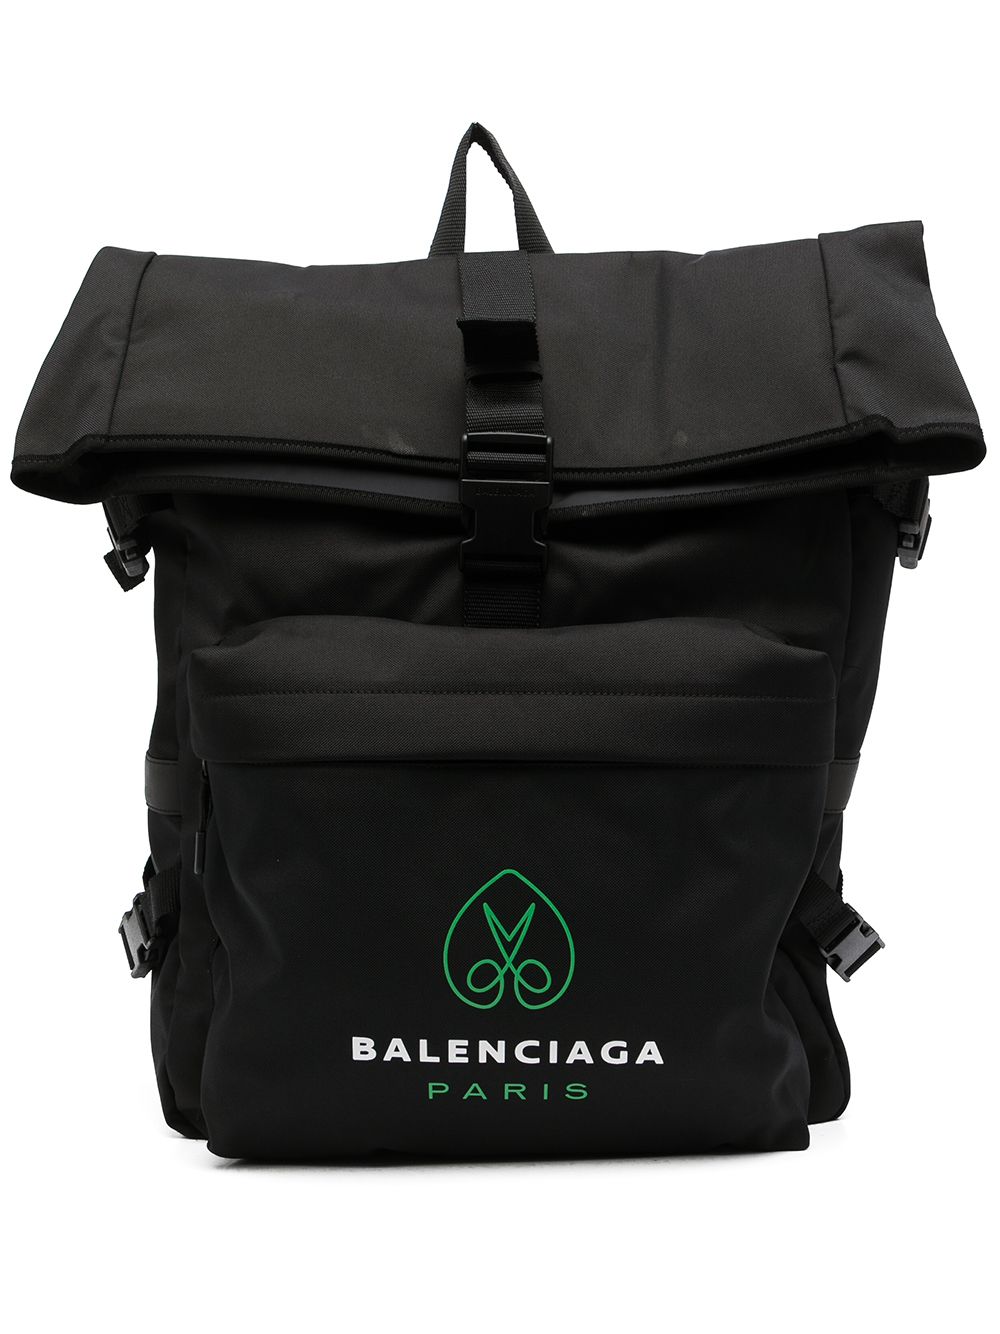 BALENCIAGA Zaino nero in poliammide con stampa logo Balenciaga verde e bianca